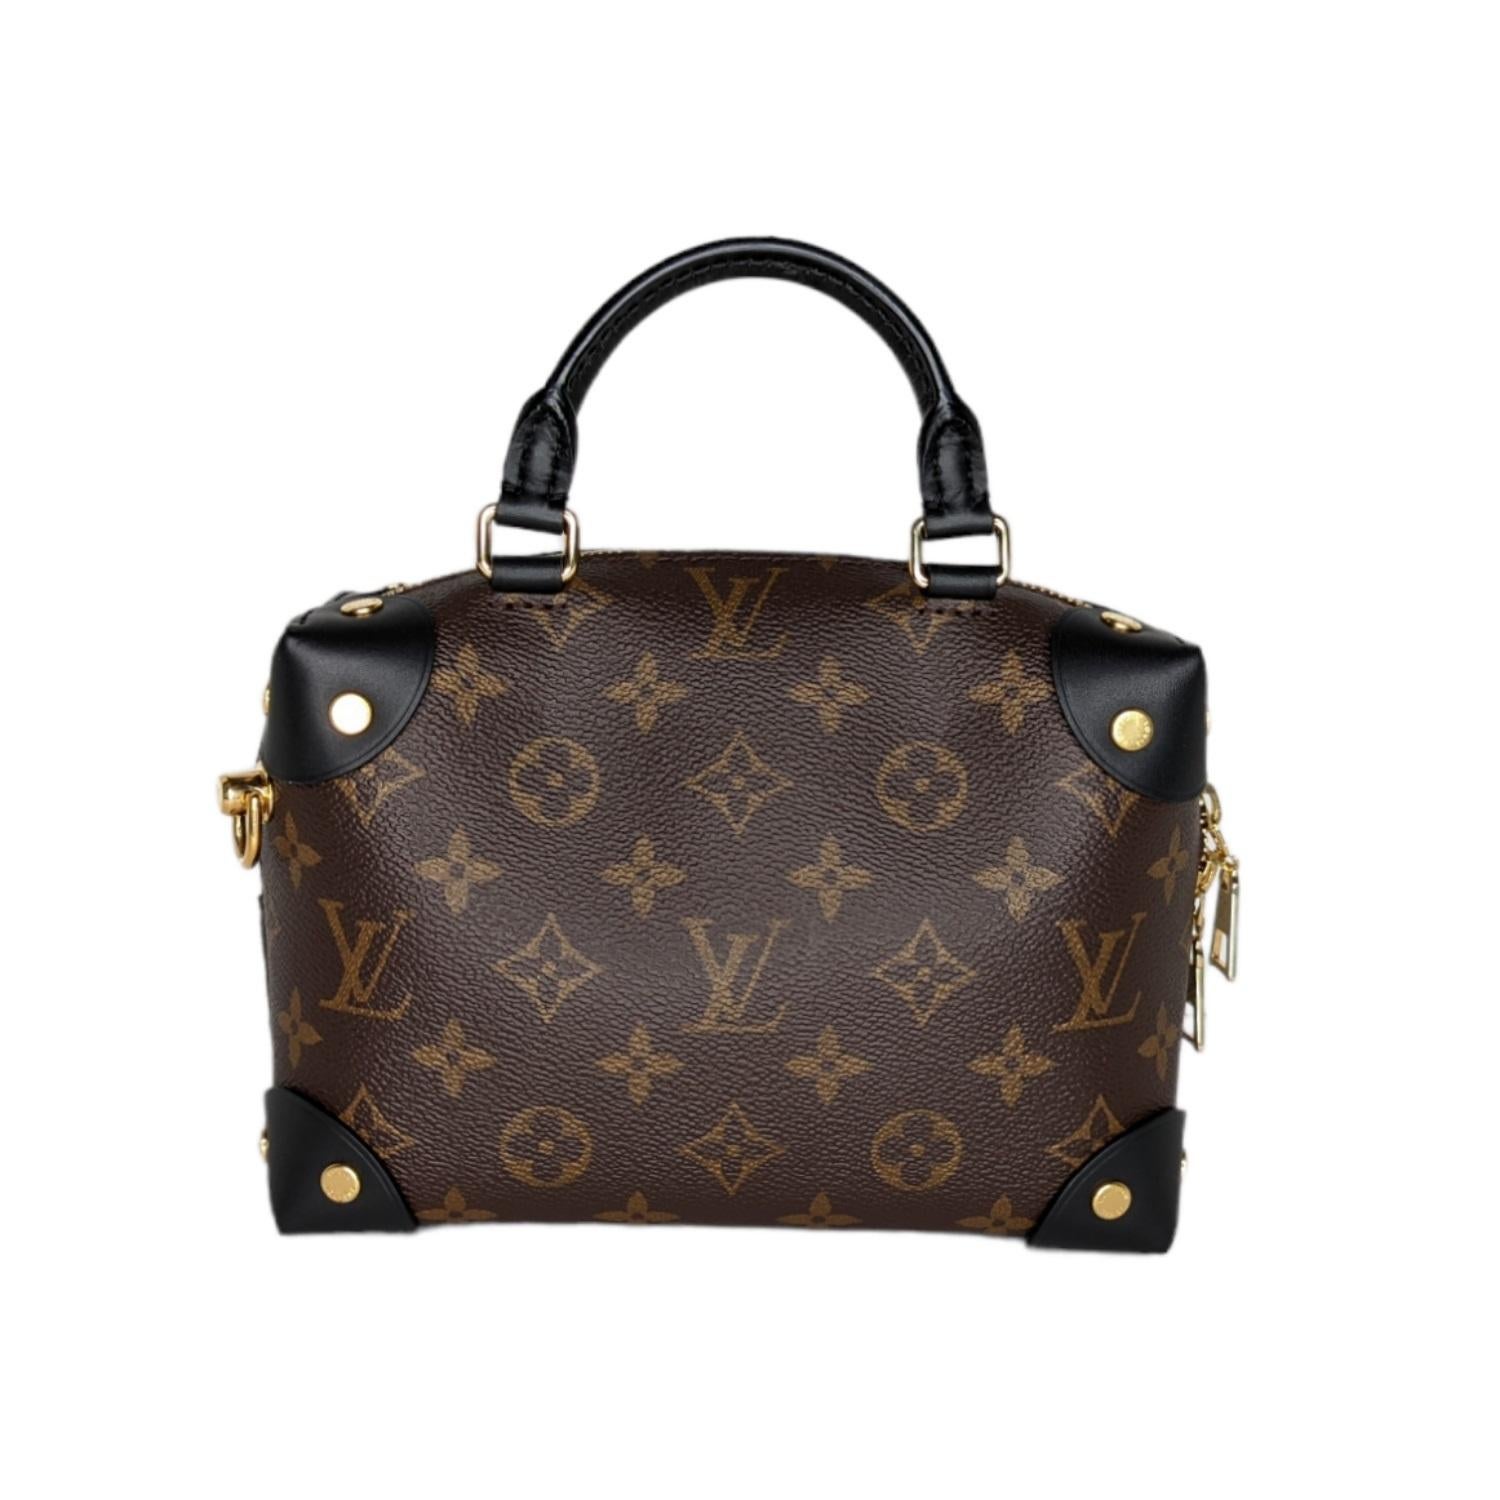 Ce sac à main élégant est fabriqué en toile Monogram Louis Vuitton, avec des détails en cuir noir. Le sac est doté d'une bandoulière en chaîne dorée et d'un matériel en laiton poli. La fermeture à glissière supérieure s'ouvre sur un intérieur en